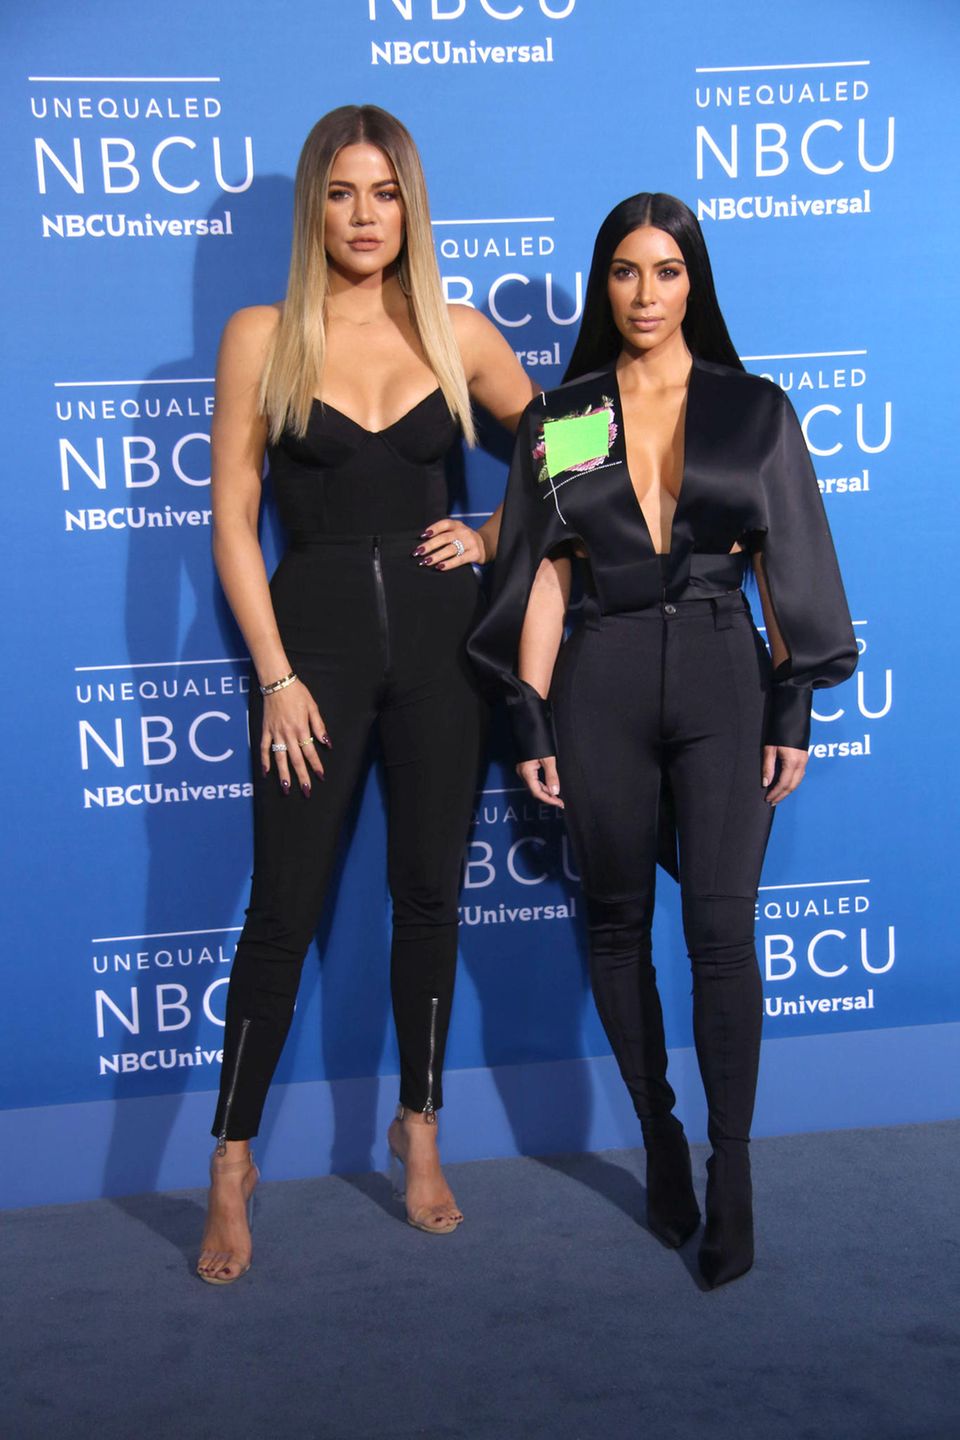 Aufeinander abgestimmt: Khoé und Kim Kardashian tragen beide eine hautenge schwarze Stretchhose zu tiefem Dekolleté.